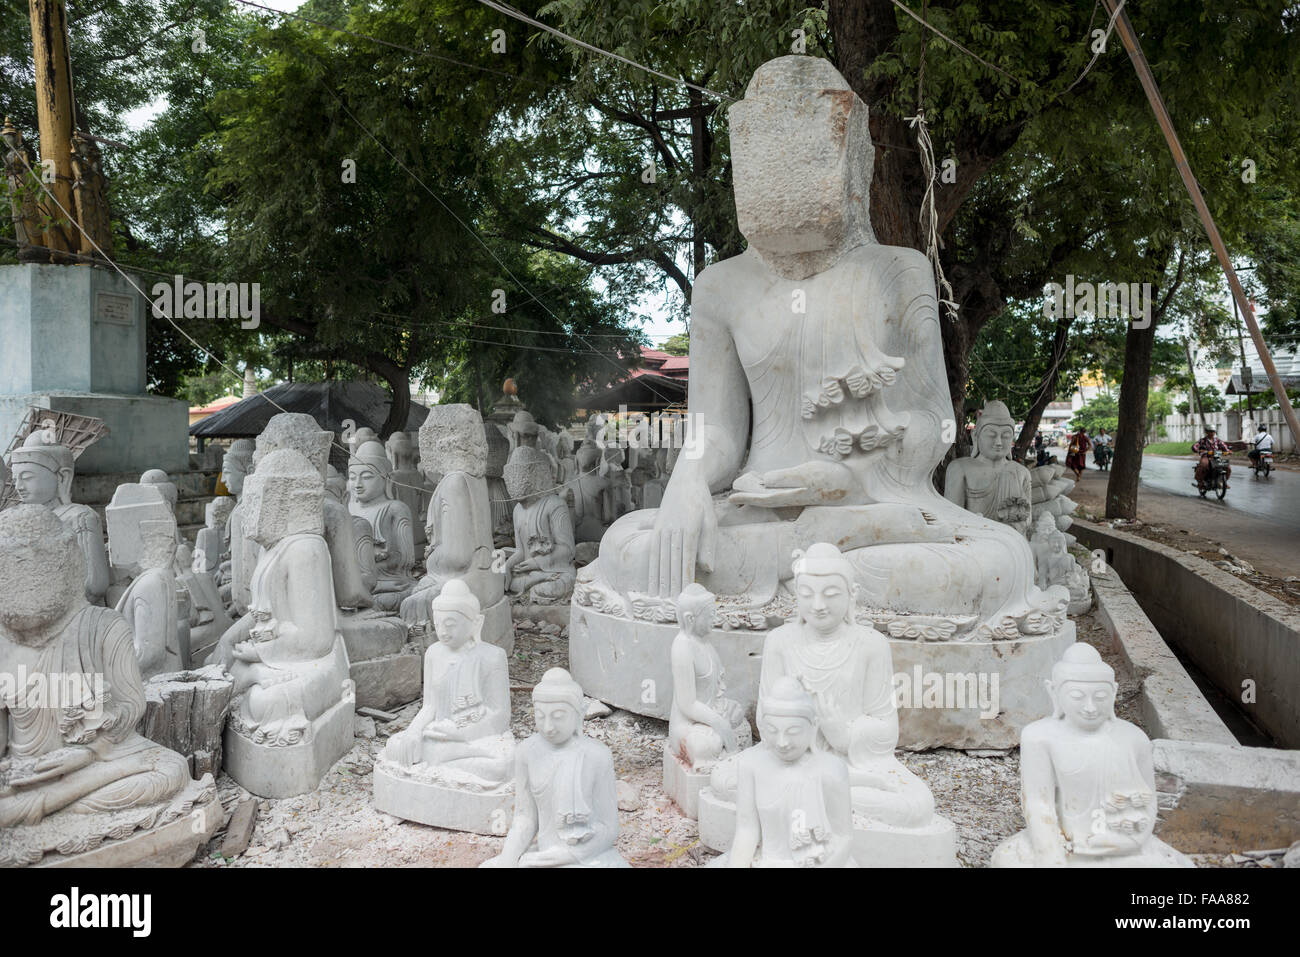 MANDALAY, Myanmar - artigiani locali si impegnano il polveroso e lavoro massacrante di intagliare le statue del Buddha in marmo. Con il buddismo è la religione dominante in Myanmar, vi è una forte domanda per le statue, con i client in grado di scegliere tra una miriade di pose, dimensioni e stili. Gli artigiani sono raggruppati su una strada nel quartiere Chanmyathazi di Mandalay vicino la Mahamuni Pagoda. Foto Stock